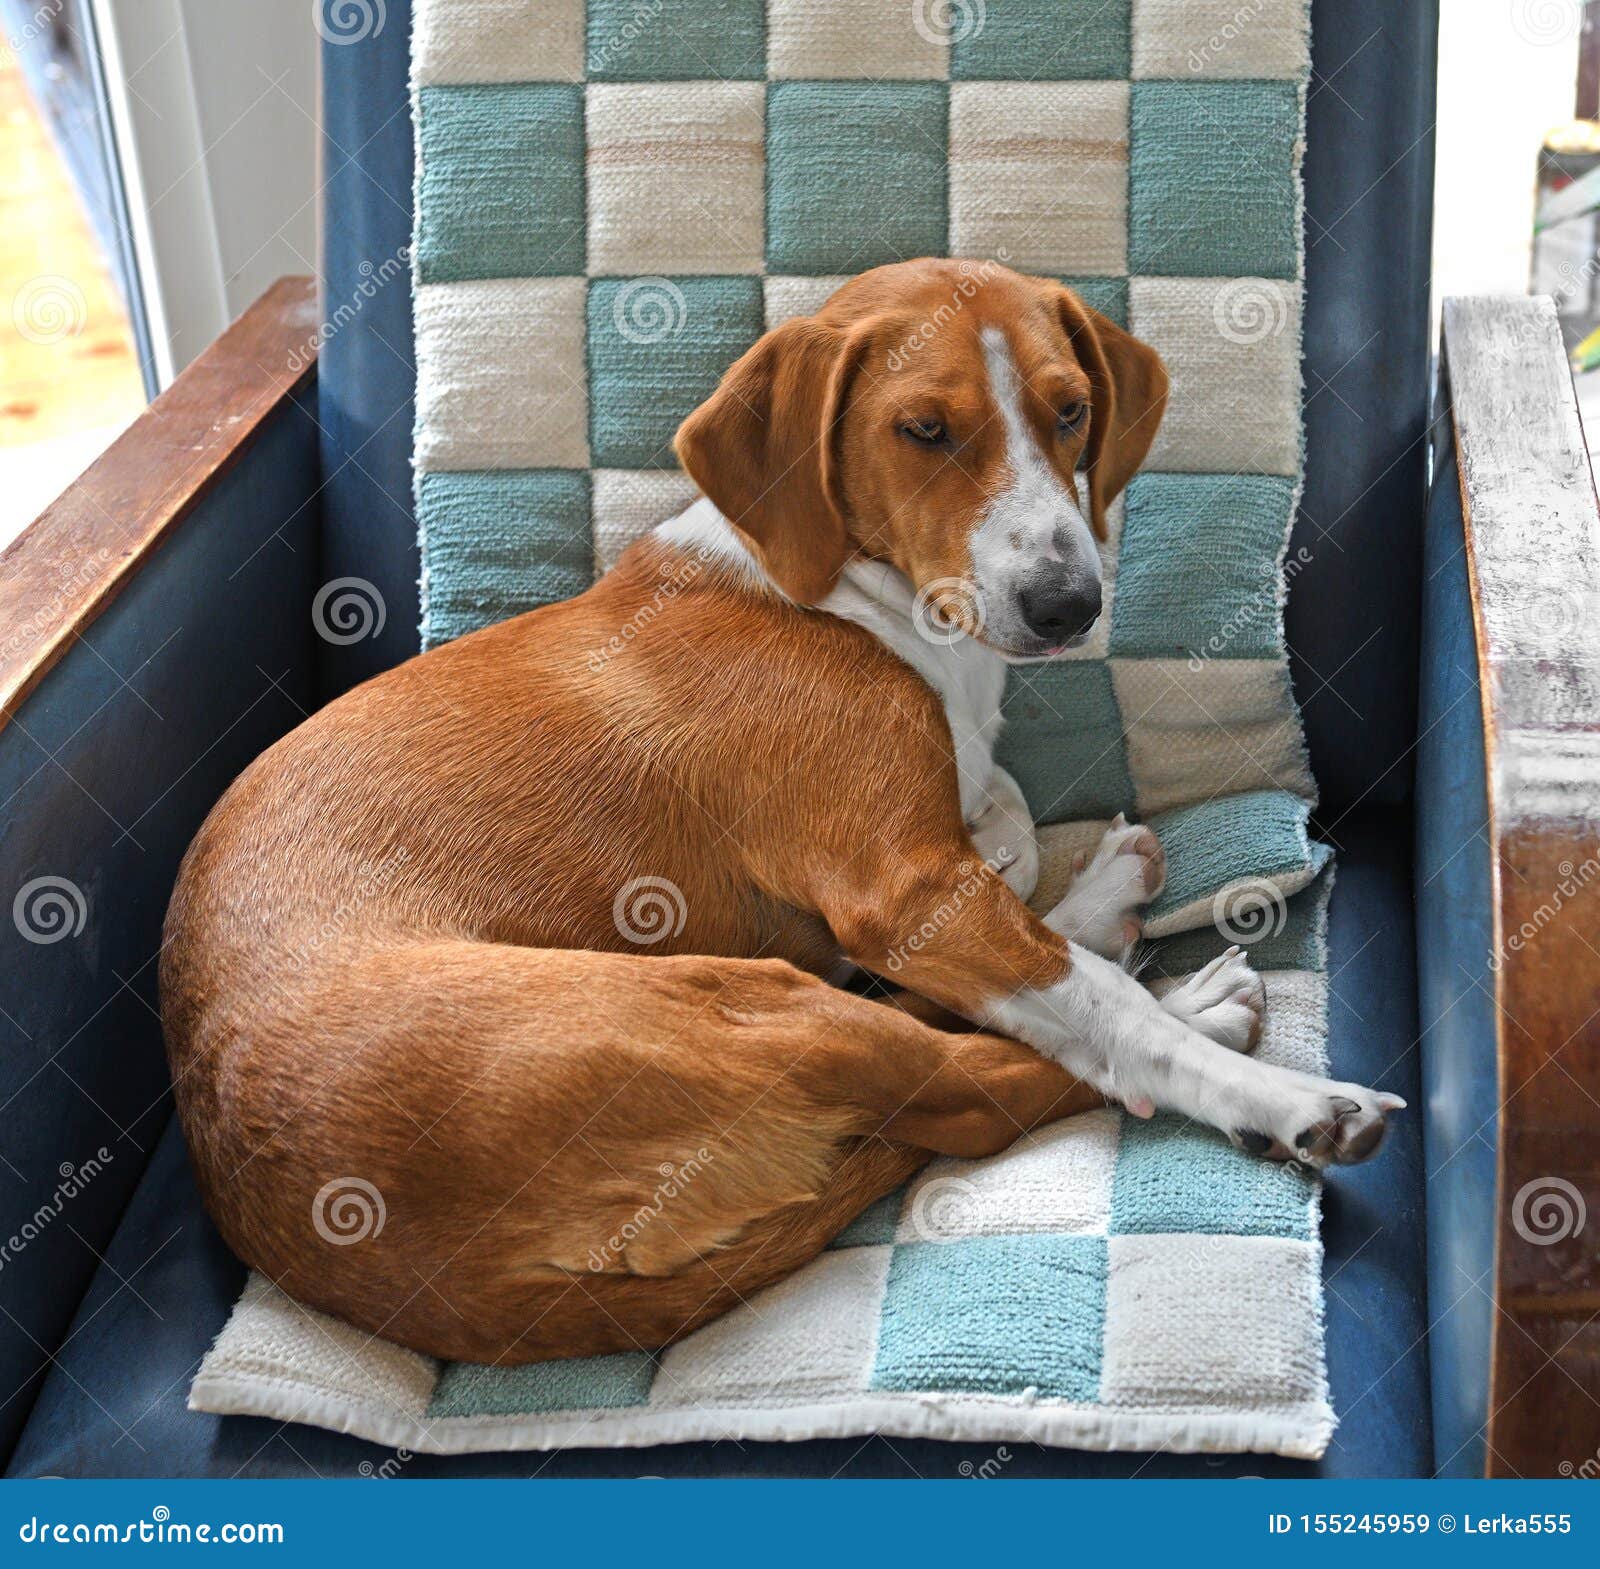 德雷夫 狗品种 从瑞典的短足的scenthound为寻找鹿和其他比赛使用了在扶手椅子的狗库存图片 图片包括有